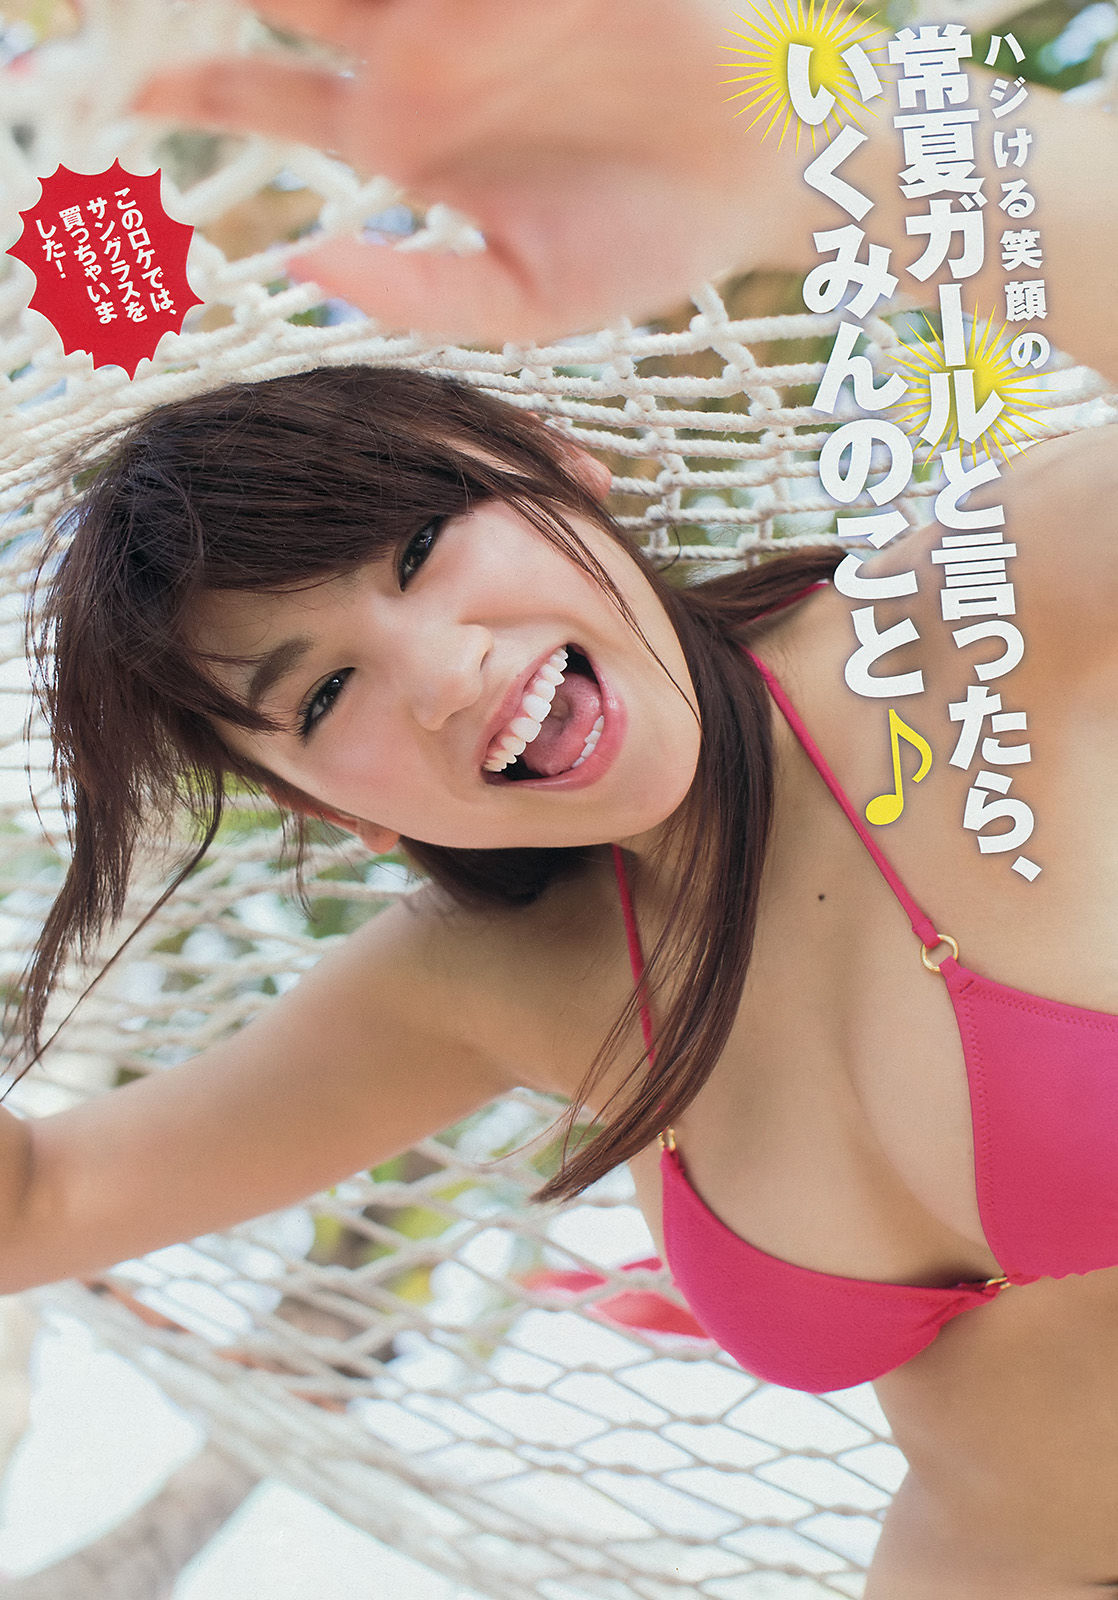 [Young Magazine] Ikumi Hisamatsu Haruna Kawaguchi 2014 Nr. 32 Foto Seite 13 No.f3d13c